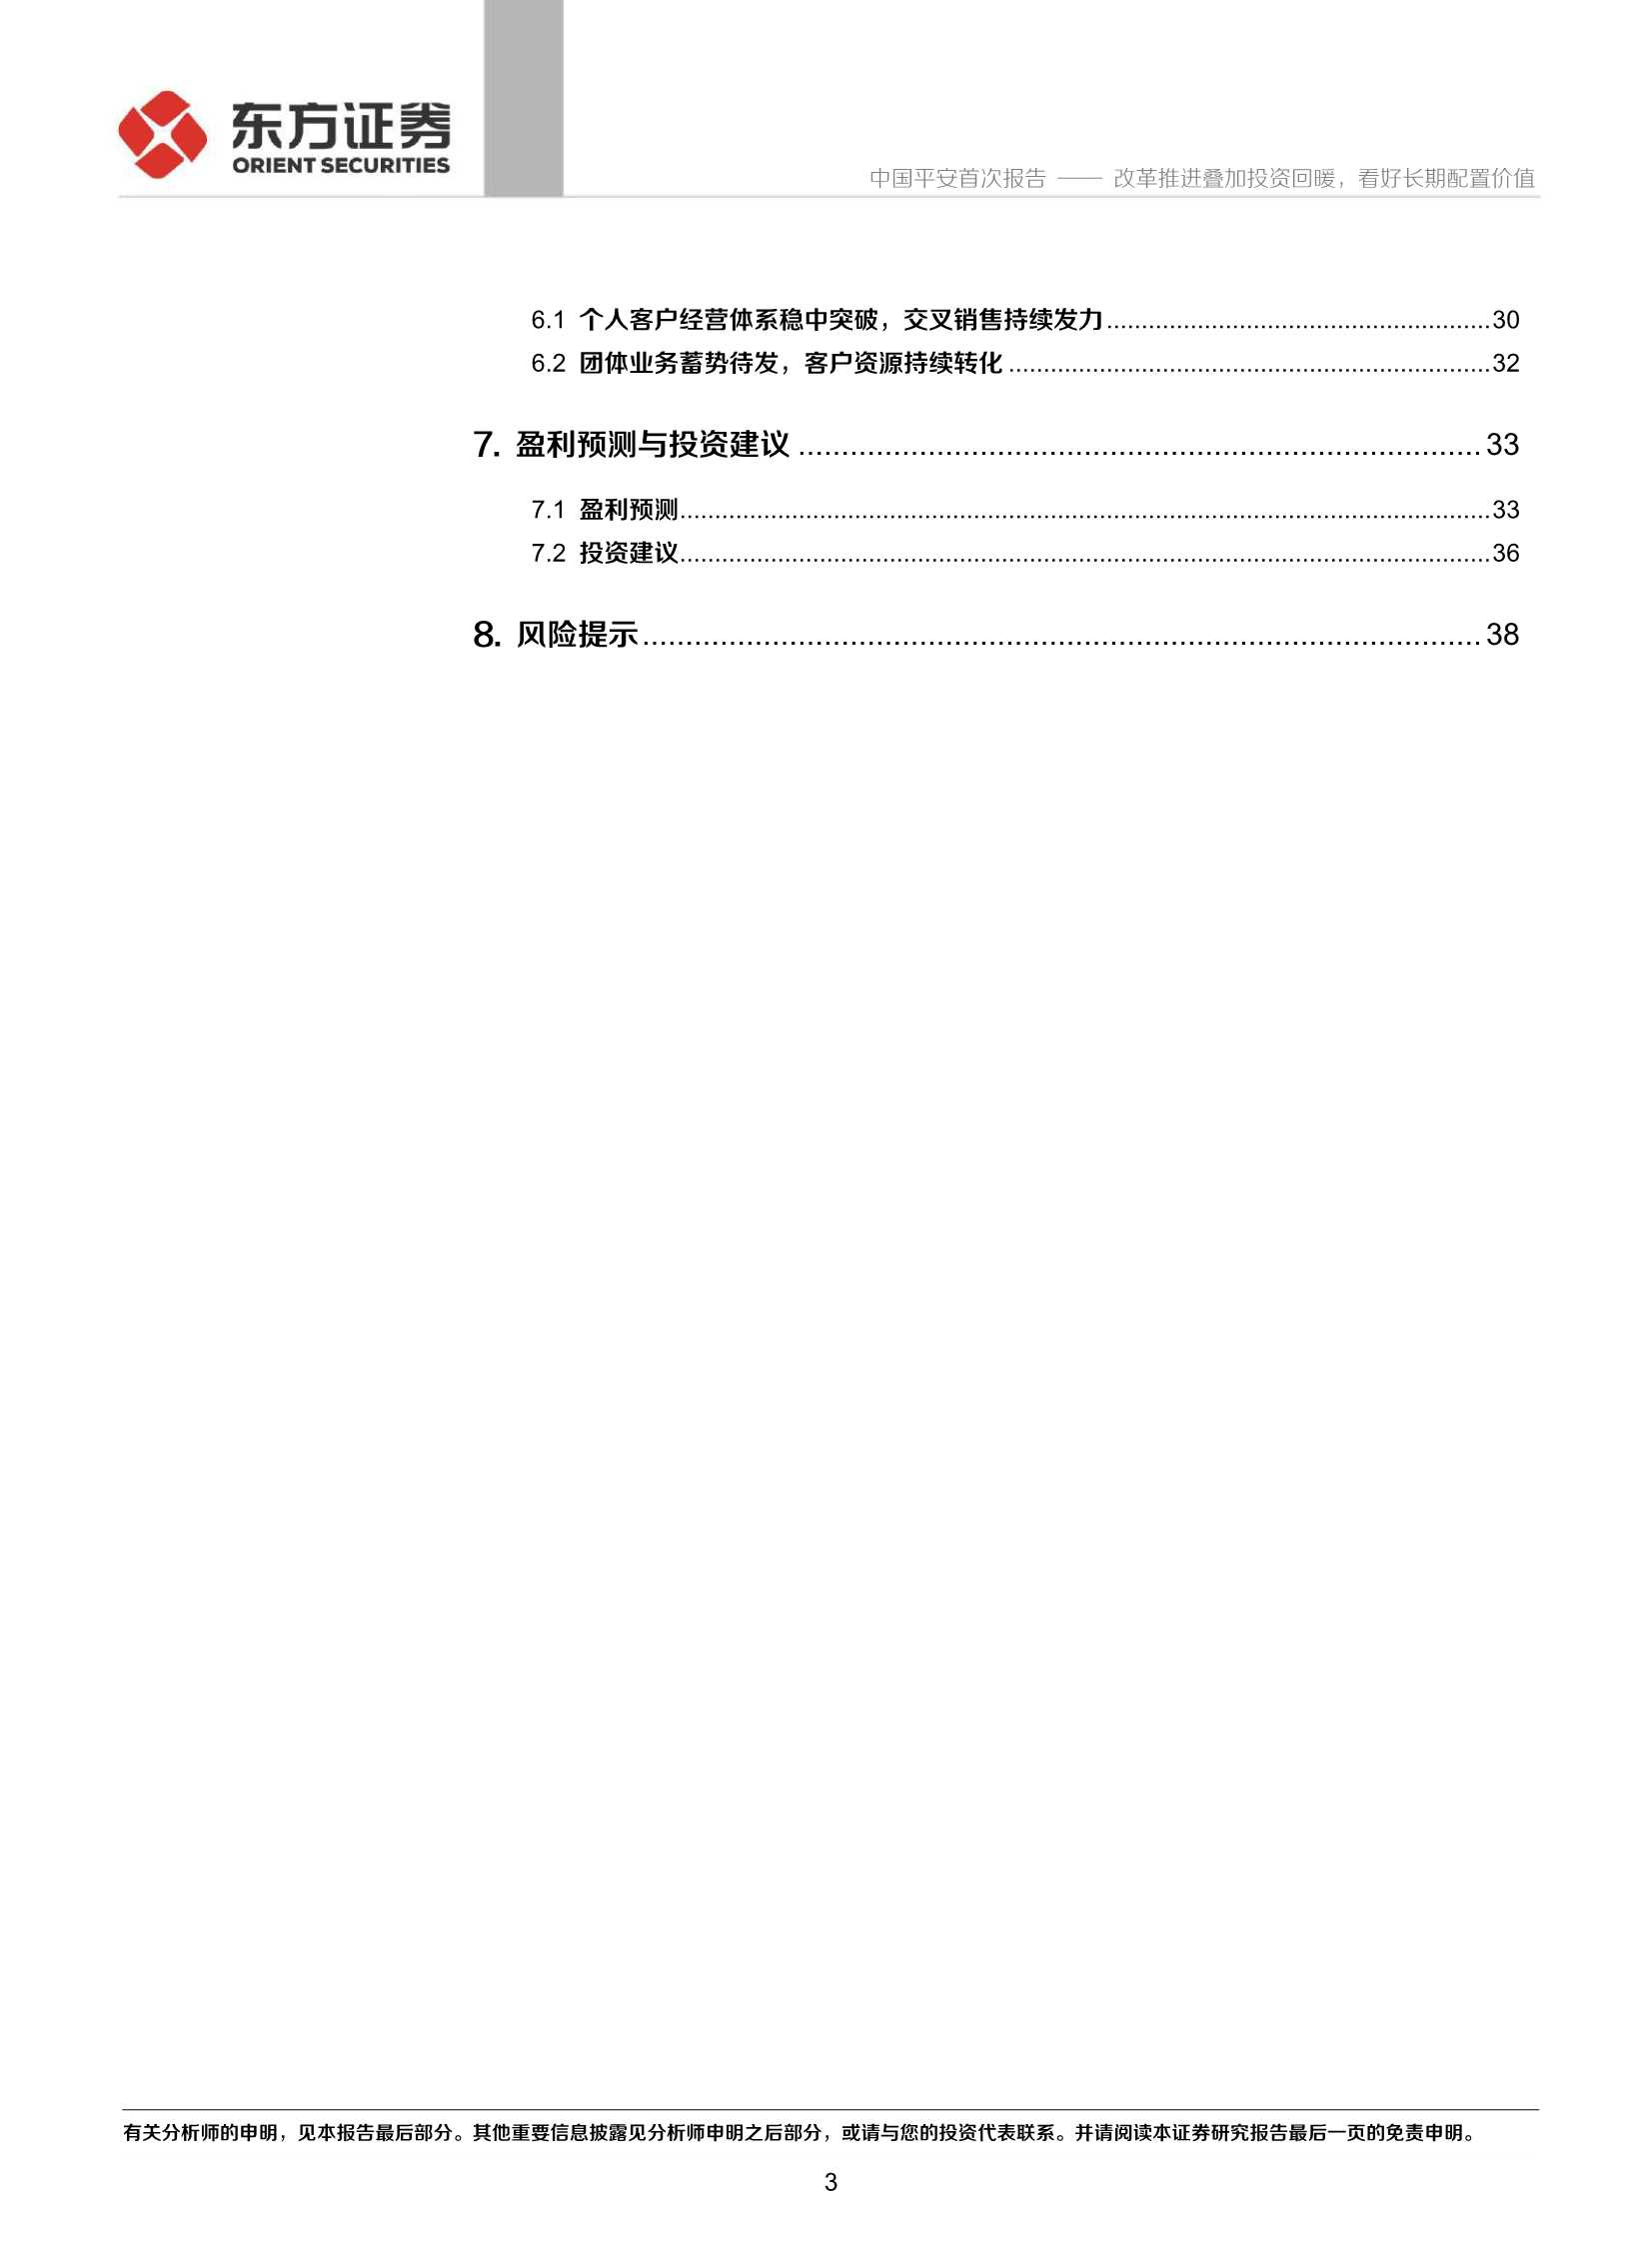 东方证券-中国平安-2318.HK-首次覆盖报告：改革推进叠加投资回暖，看好长期配置价值-20211230-41页